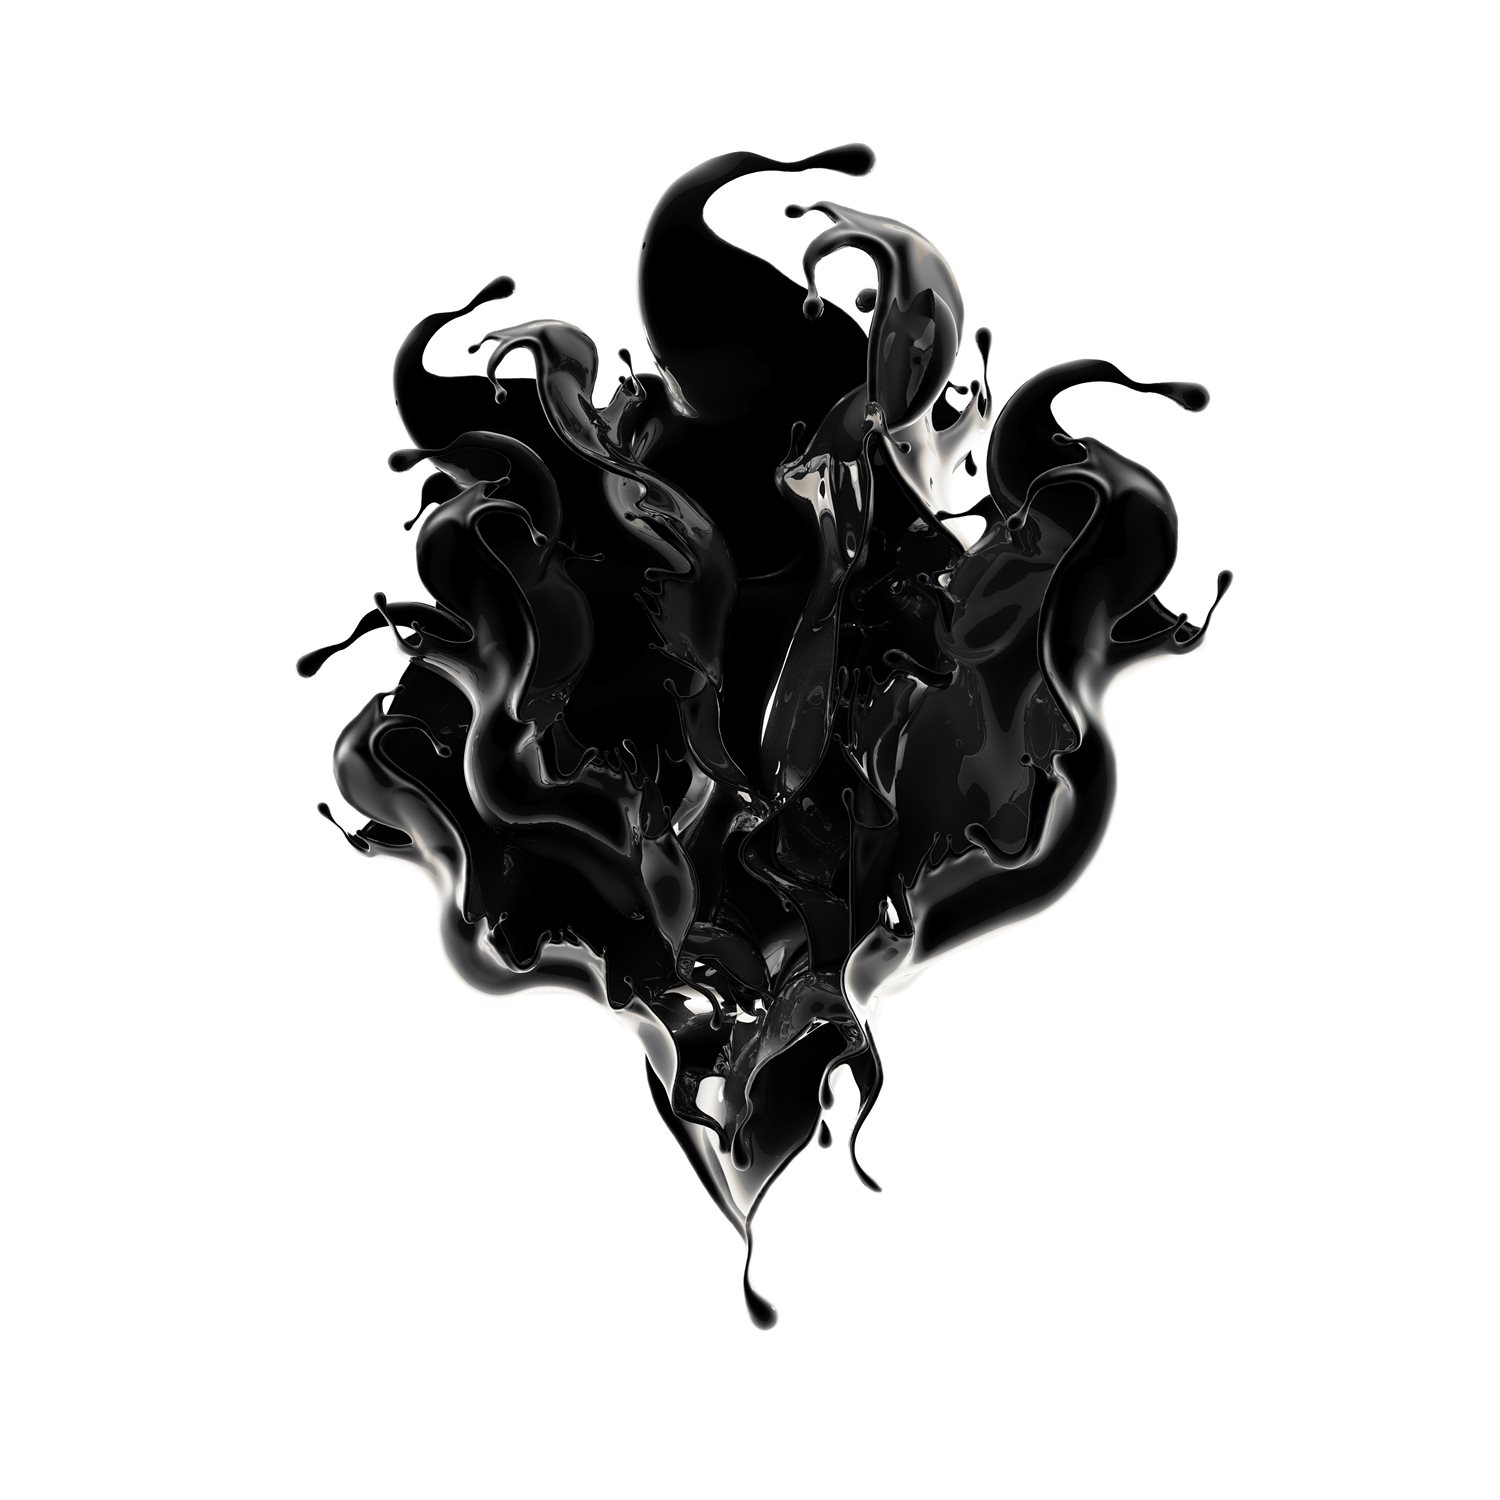  sample of industry leading carbon black disperson ink splash